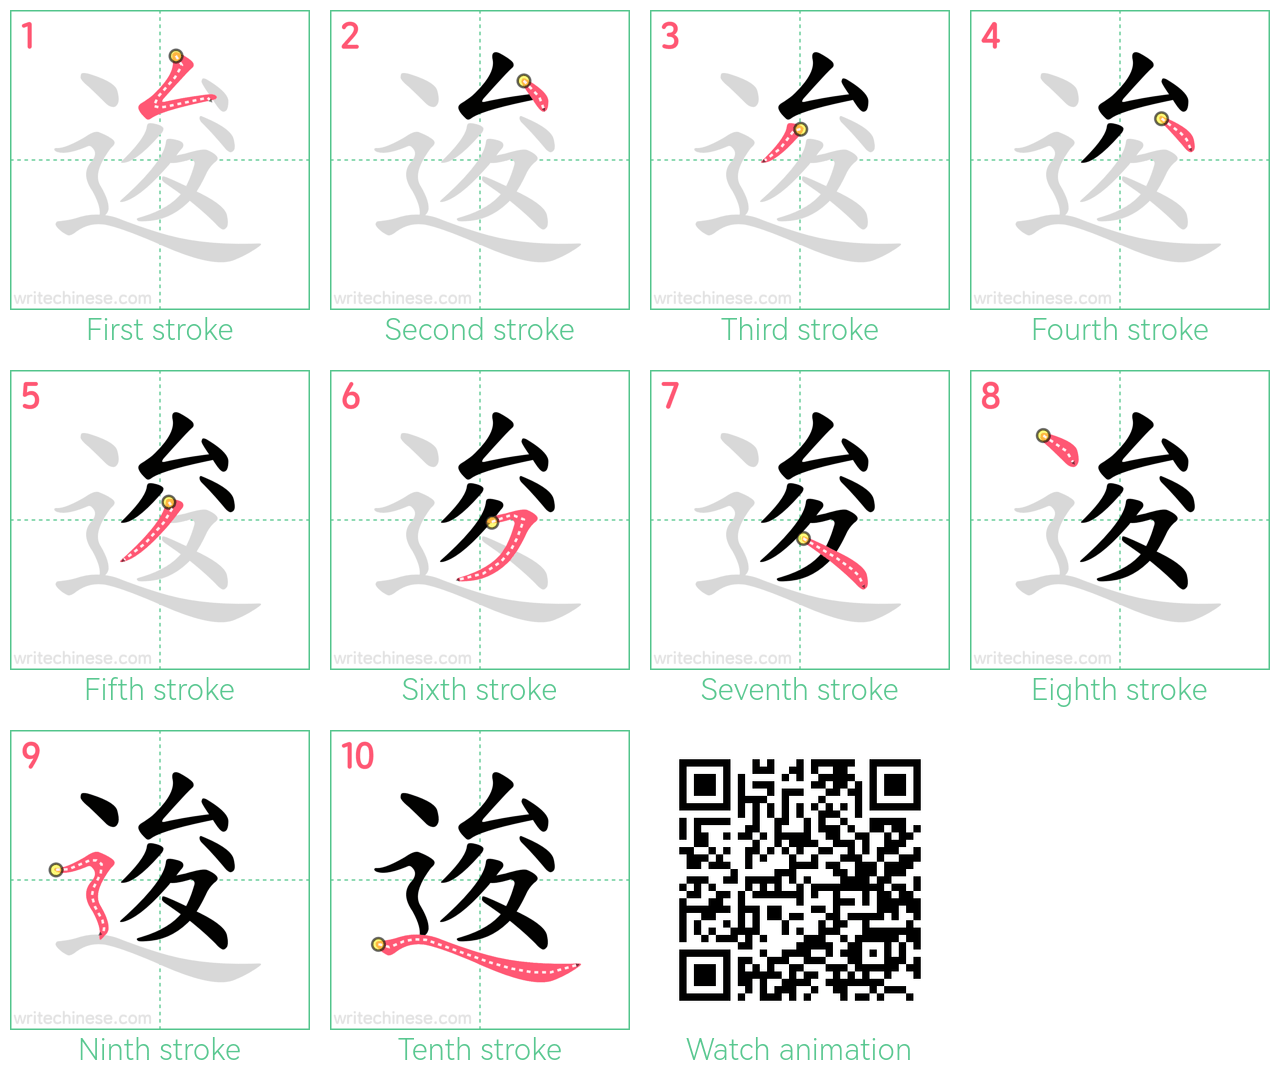 逡 step-by-step stroke order diagrams